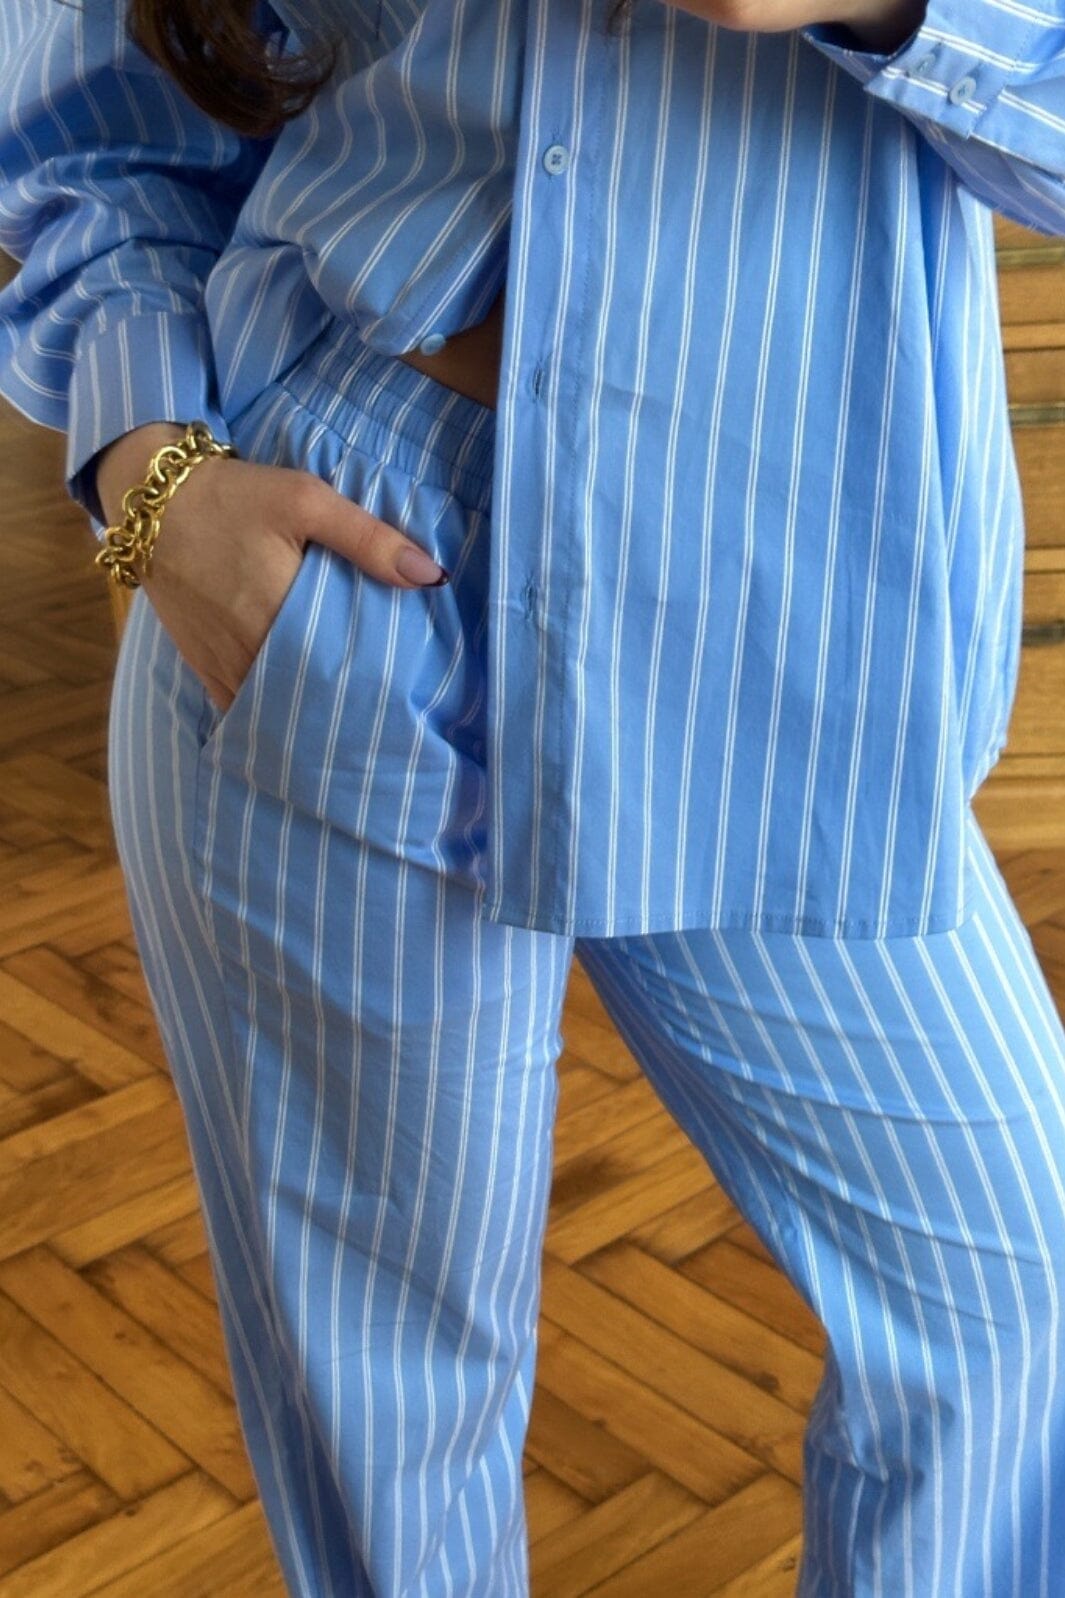 Neo Noir - Sonar Double Stripe Pants - Light Blue Bukser 